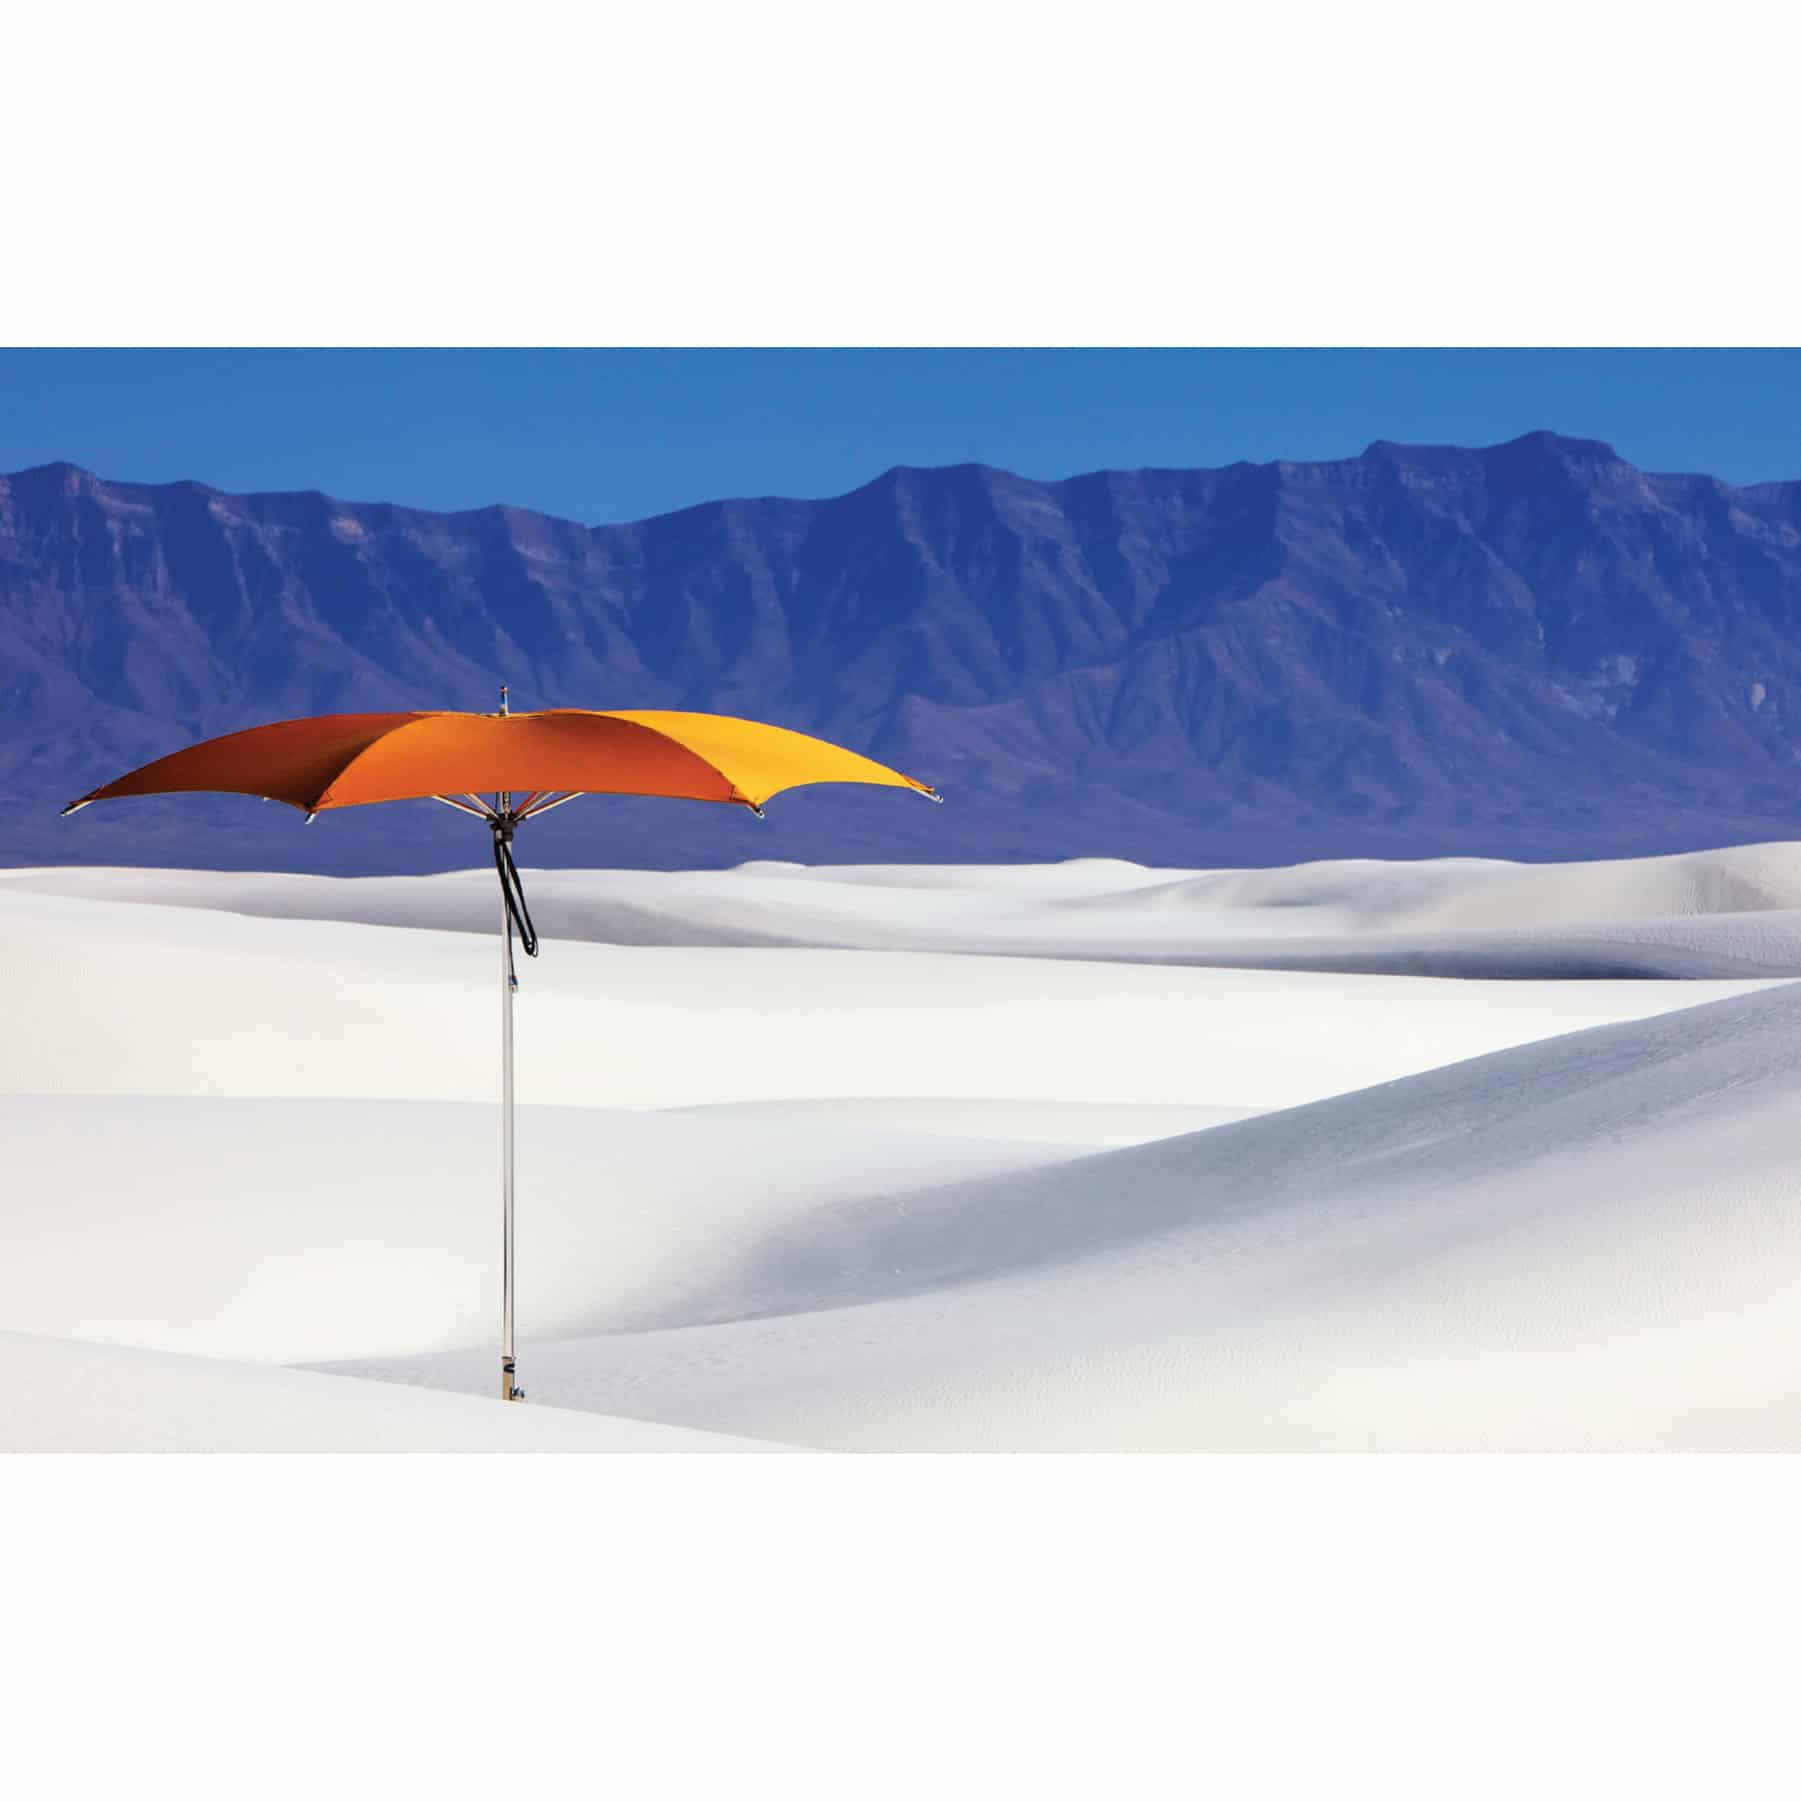 Tuuci Ocean Master Crescent Umbrella, Commercial - Colored